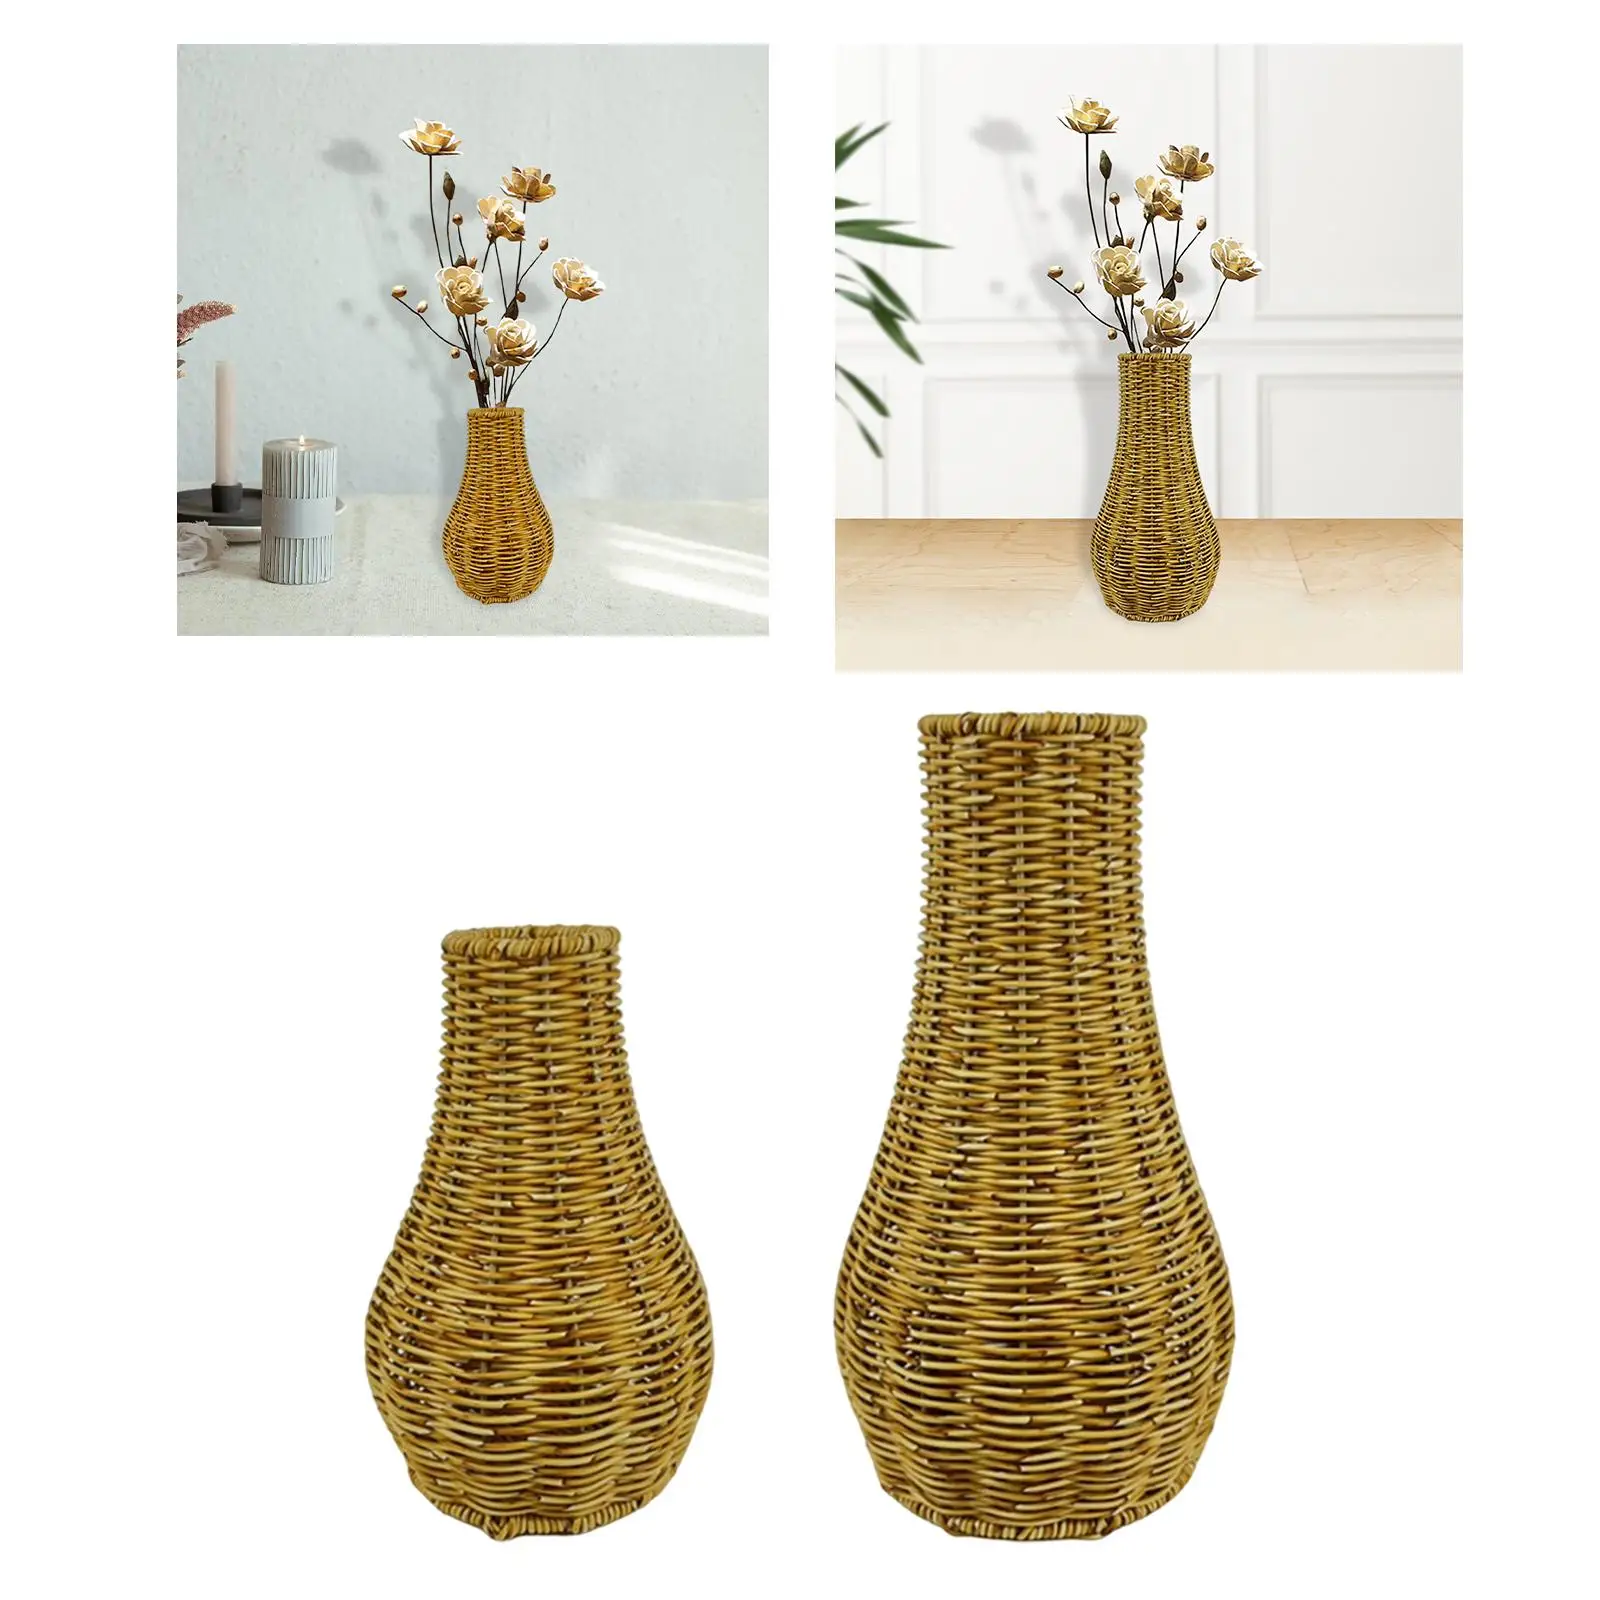 Handcrafted Rattan Vase - Exquisite Woven Art for Flower Arrangements